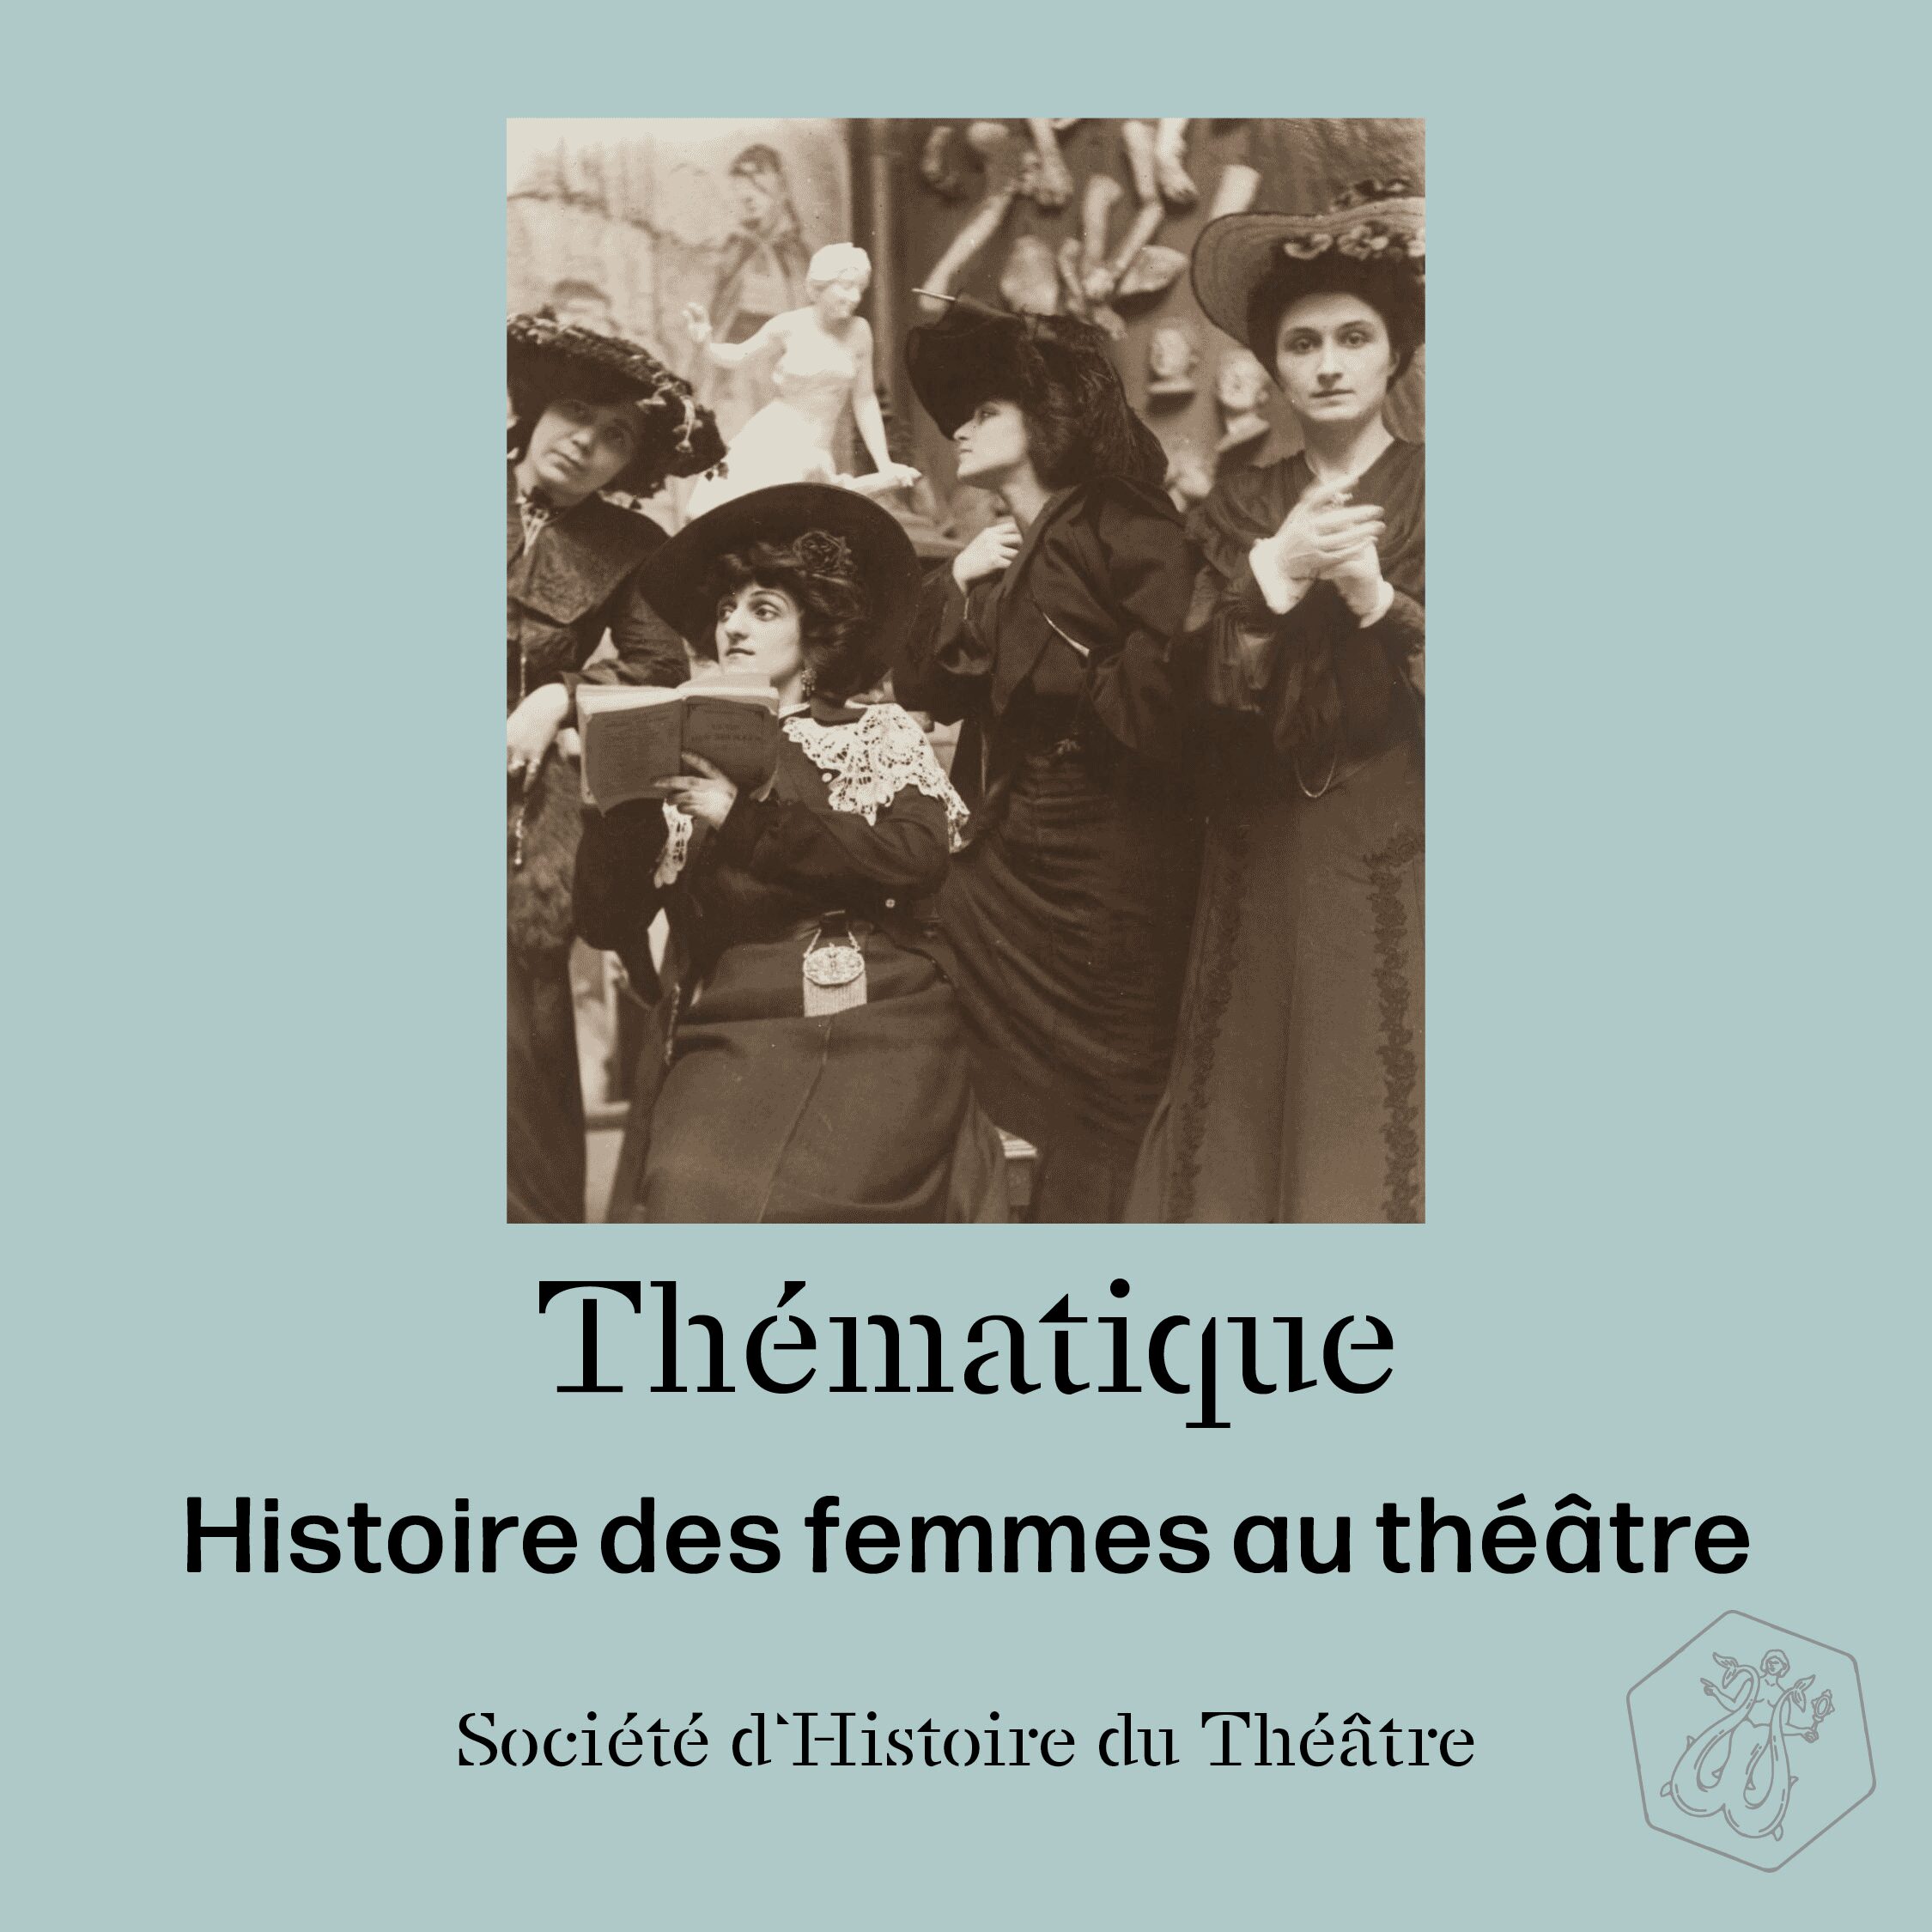 Société d'Histoire du Théâtre